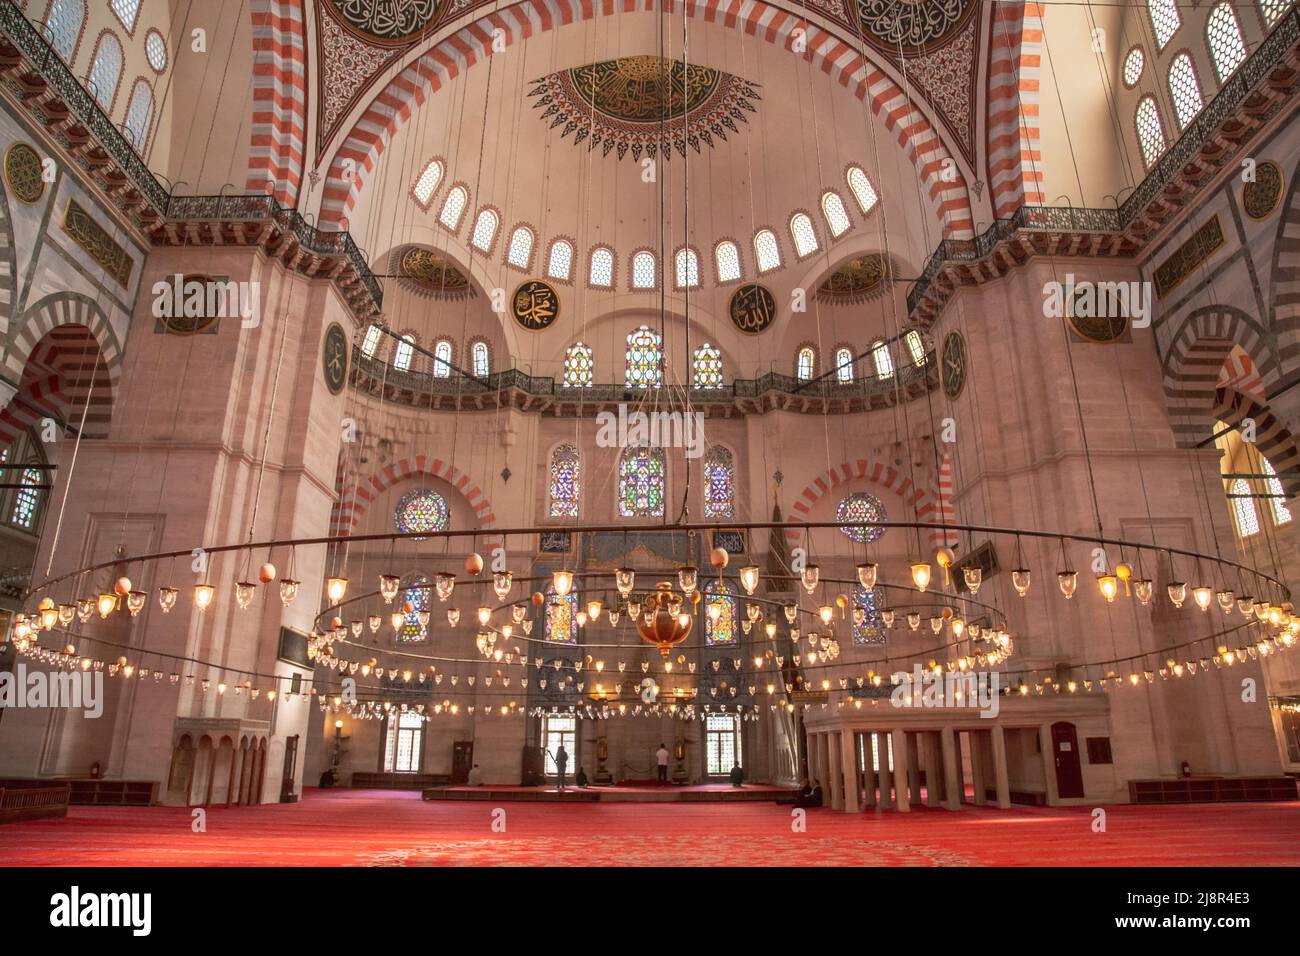 Estambul, Turquía, 25 de marzo de 2019: Vista interior de la Mezquita de Suleymaniye en Estambul, Turquía. La mezquita de Suleymaniye es una mezquita construida por Mimar Sinan en 1551 Foto de stock